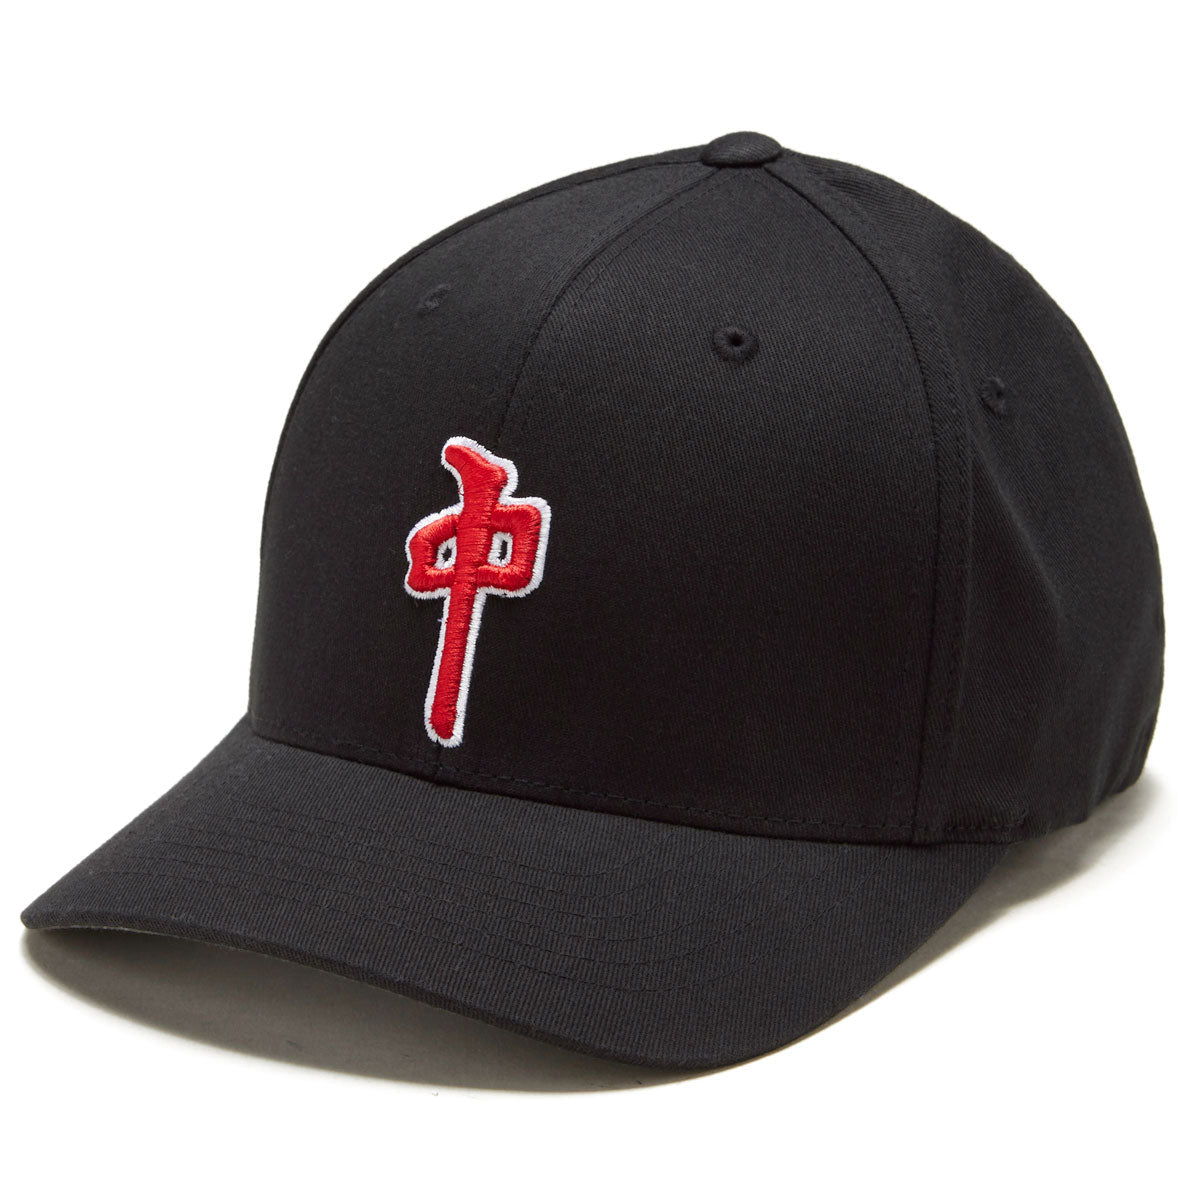 RDS Flexfit Og Puffy Hat - Black/Red image 1